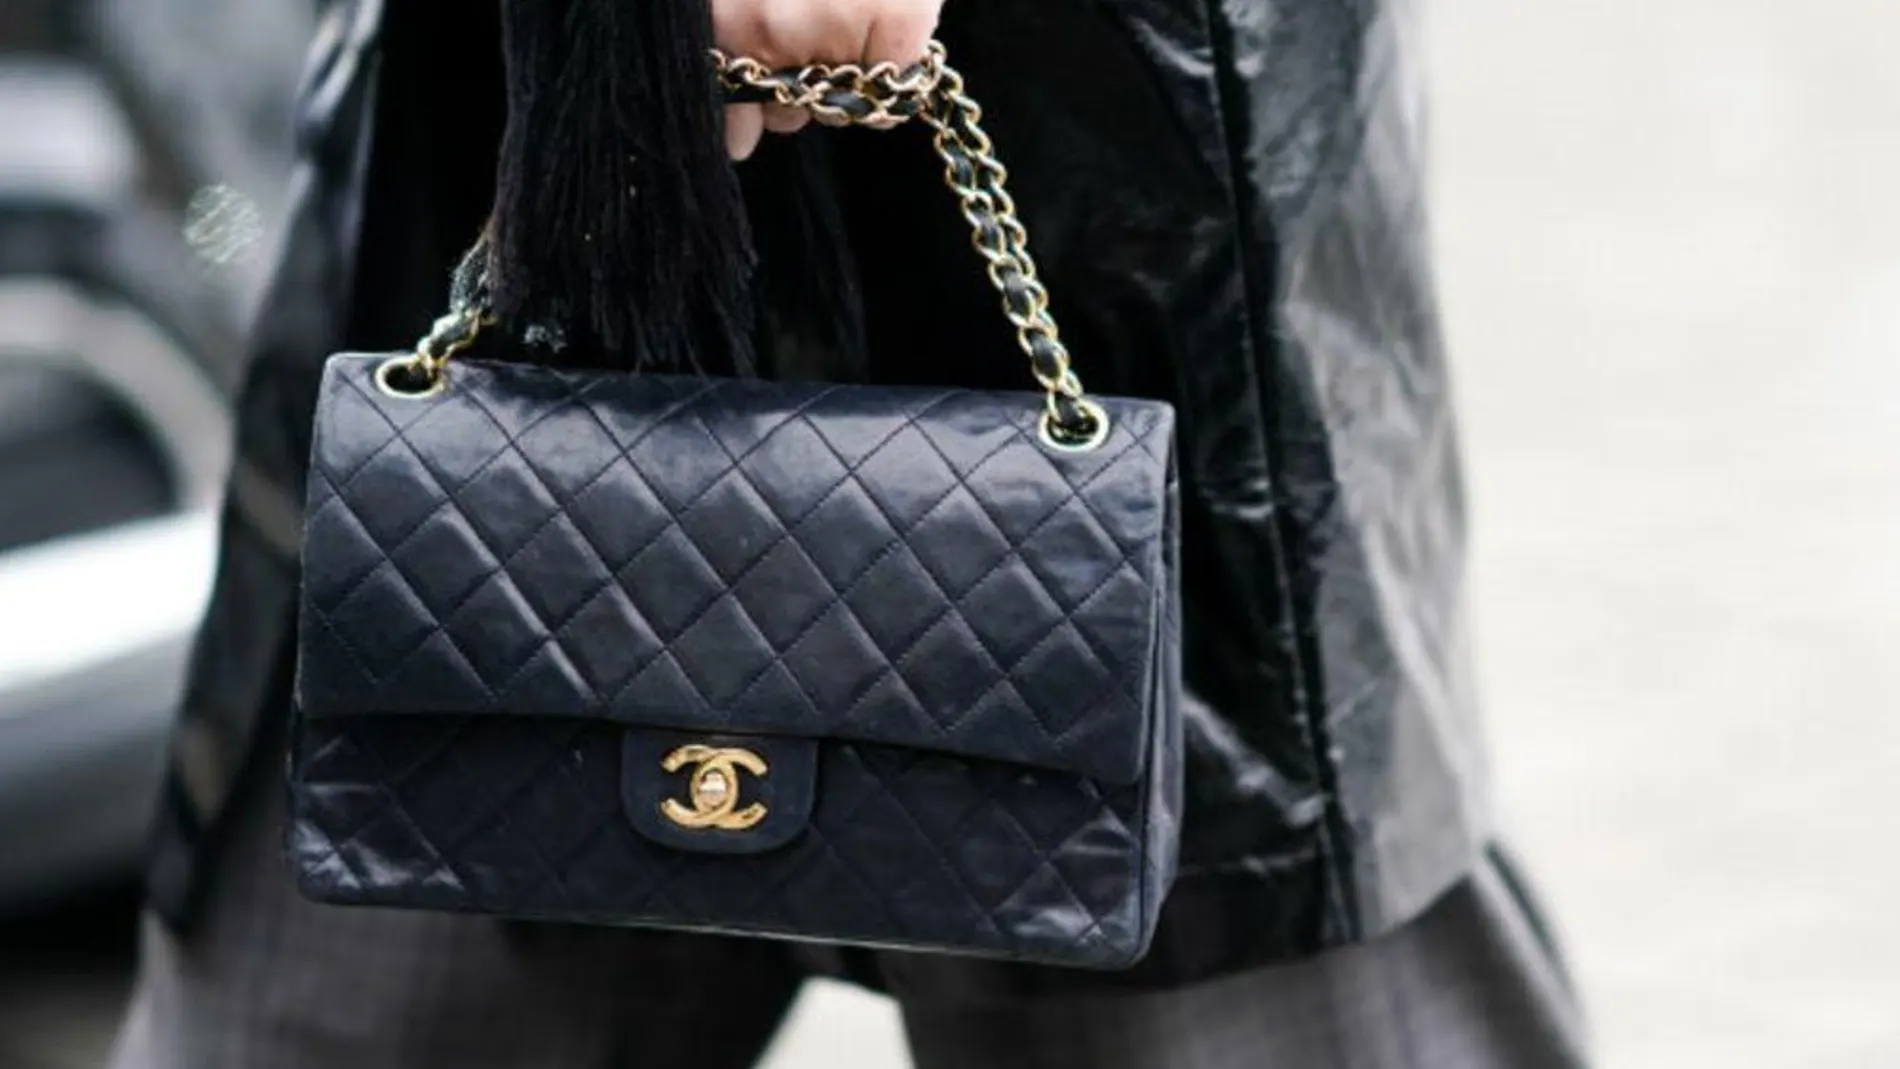 La crisis de los bolsos de Chanel: La marca limita su distribución y pide  que se venda “uno por año y cliente” en China y Corea del Sur